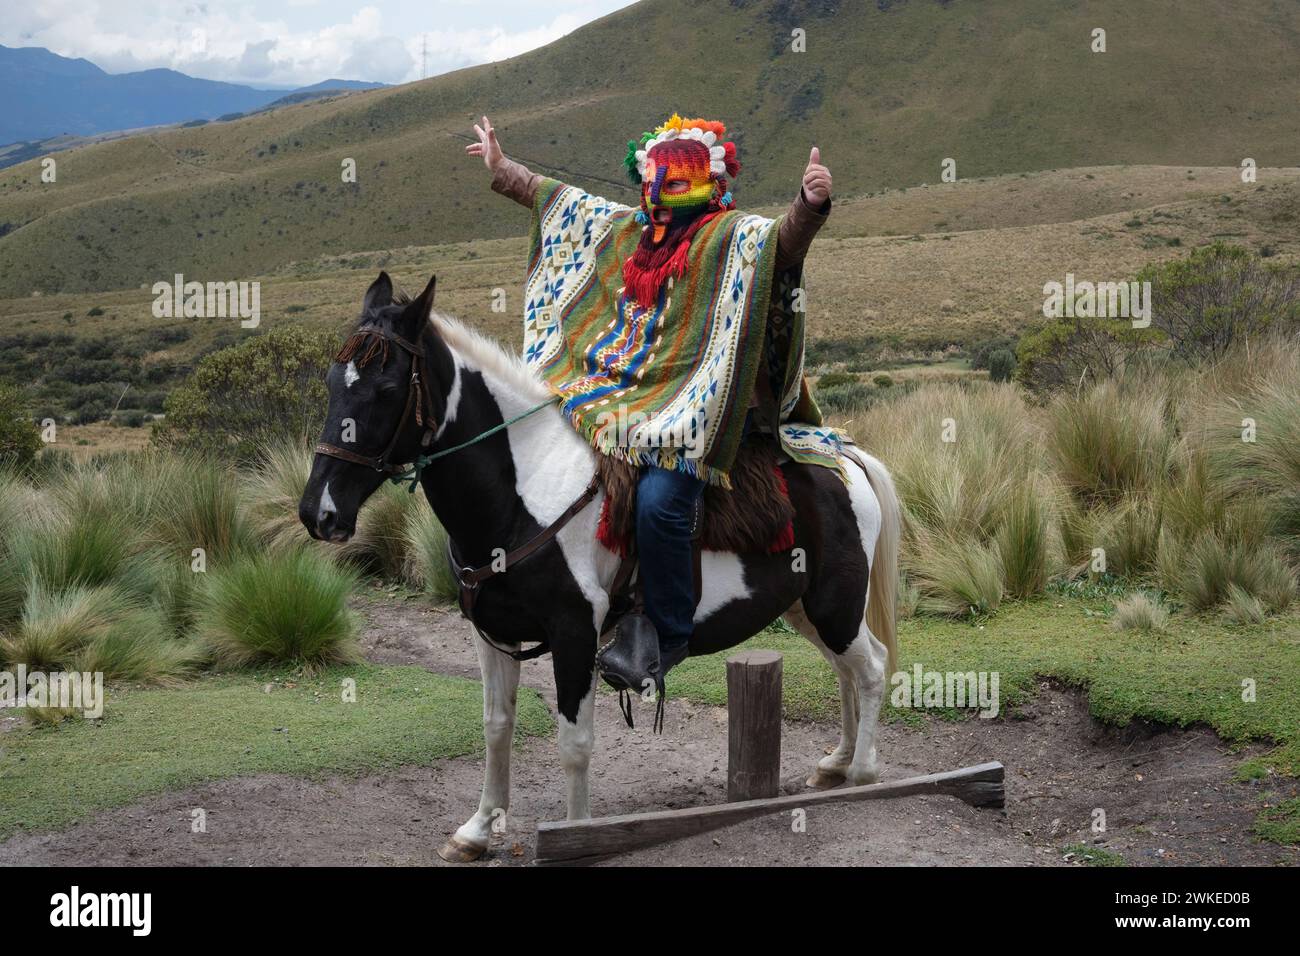 Un homme dans le costume national et le masque du peuple indigène de l'Équateur Banque D'Images